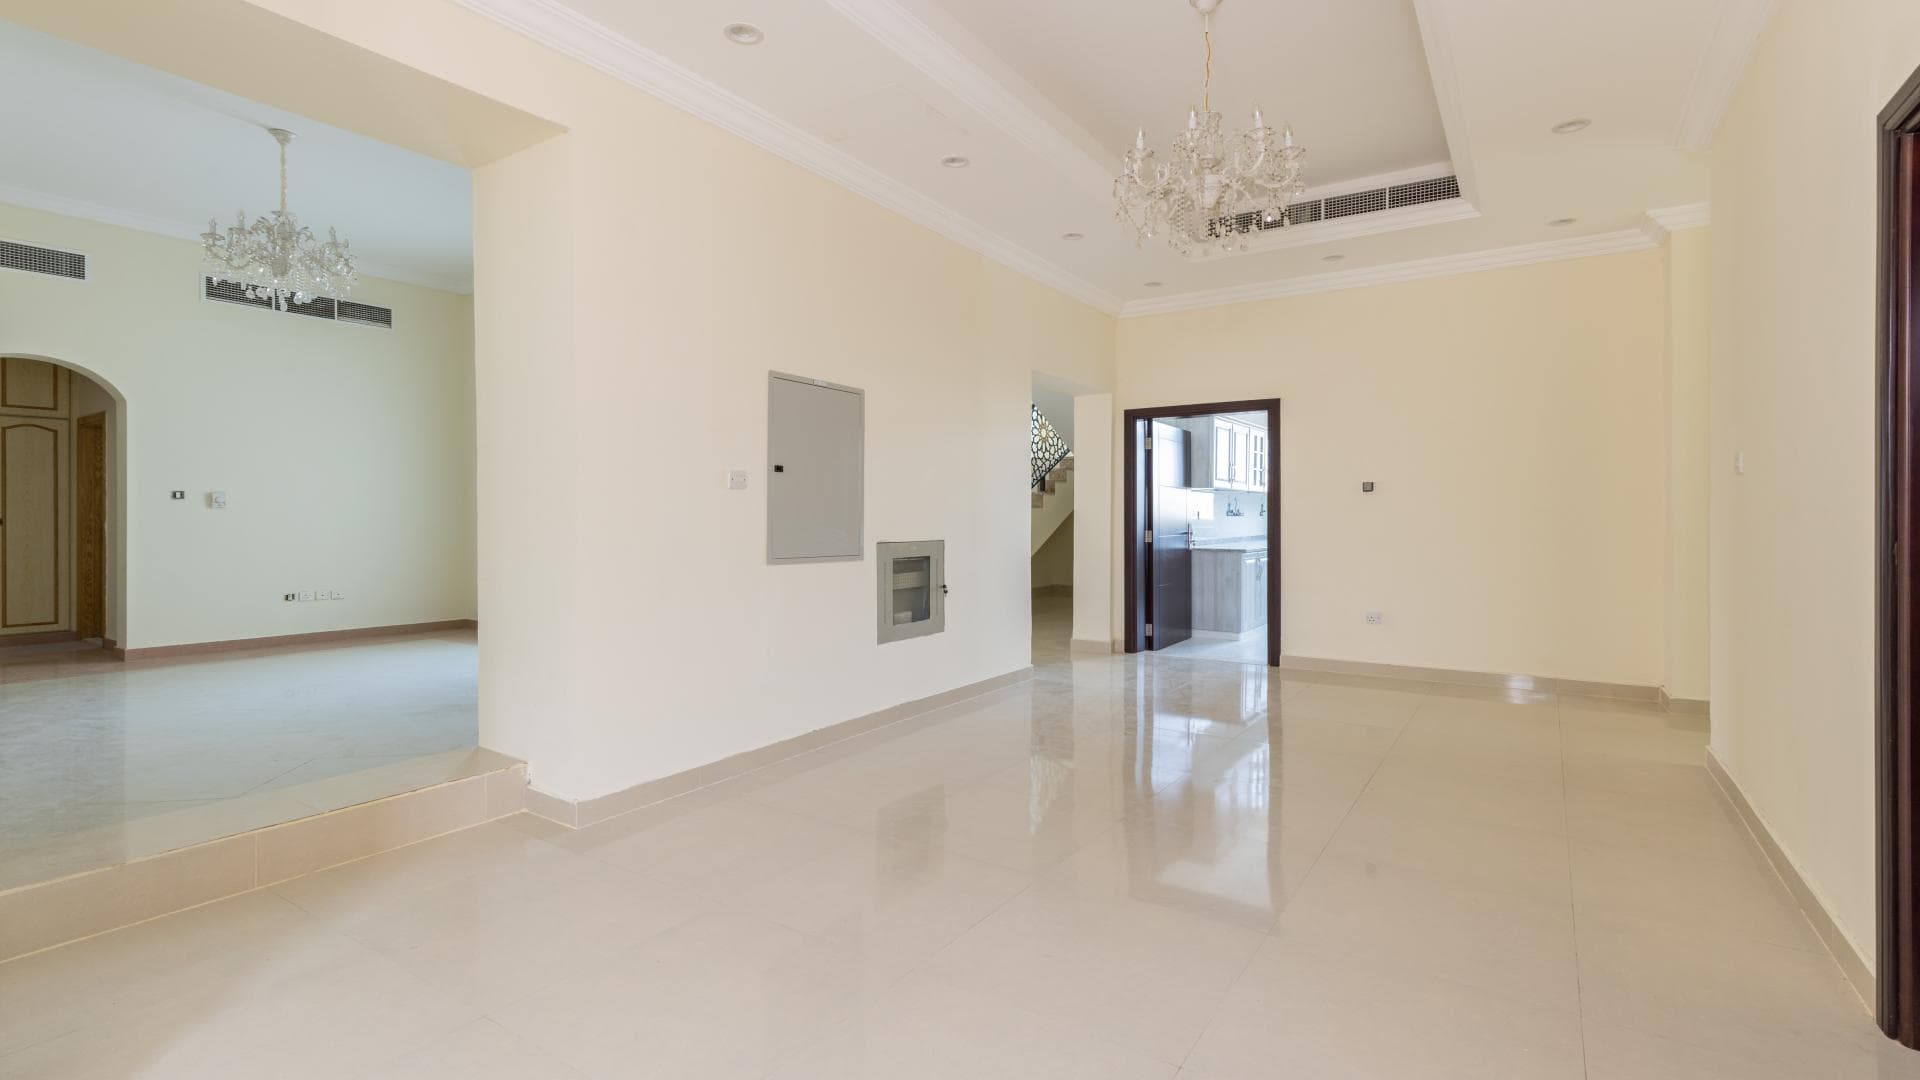 10 Bedroom Villa For Rent Jumeirah 2 Lp14748 8e4ffa1a8ede500.jpg